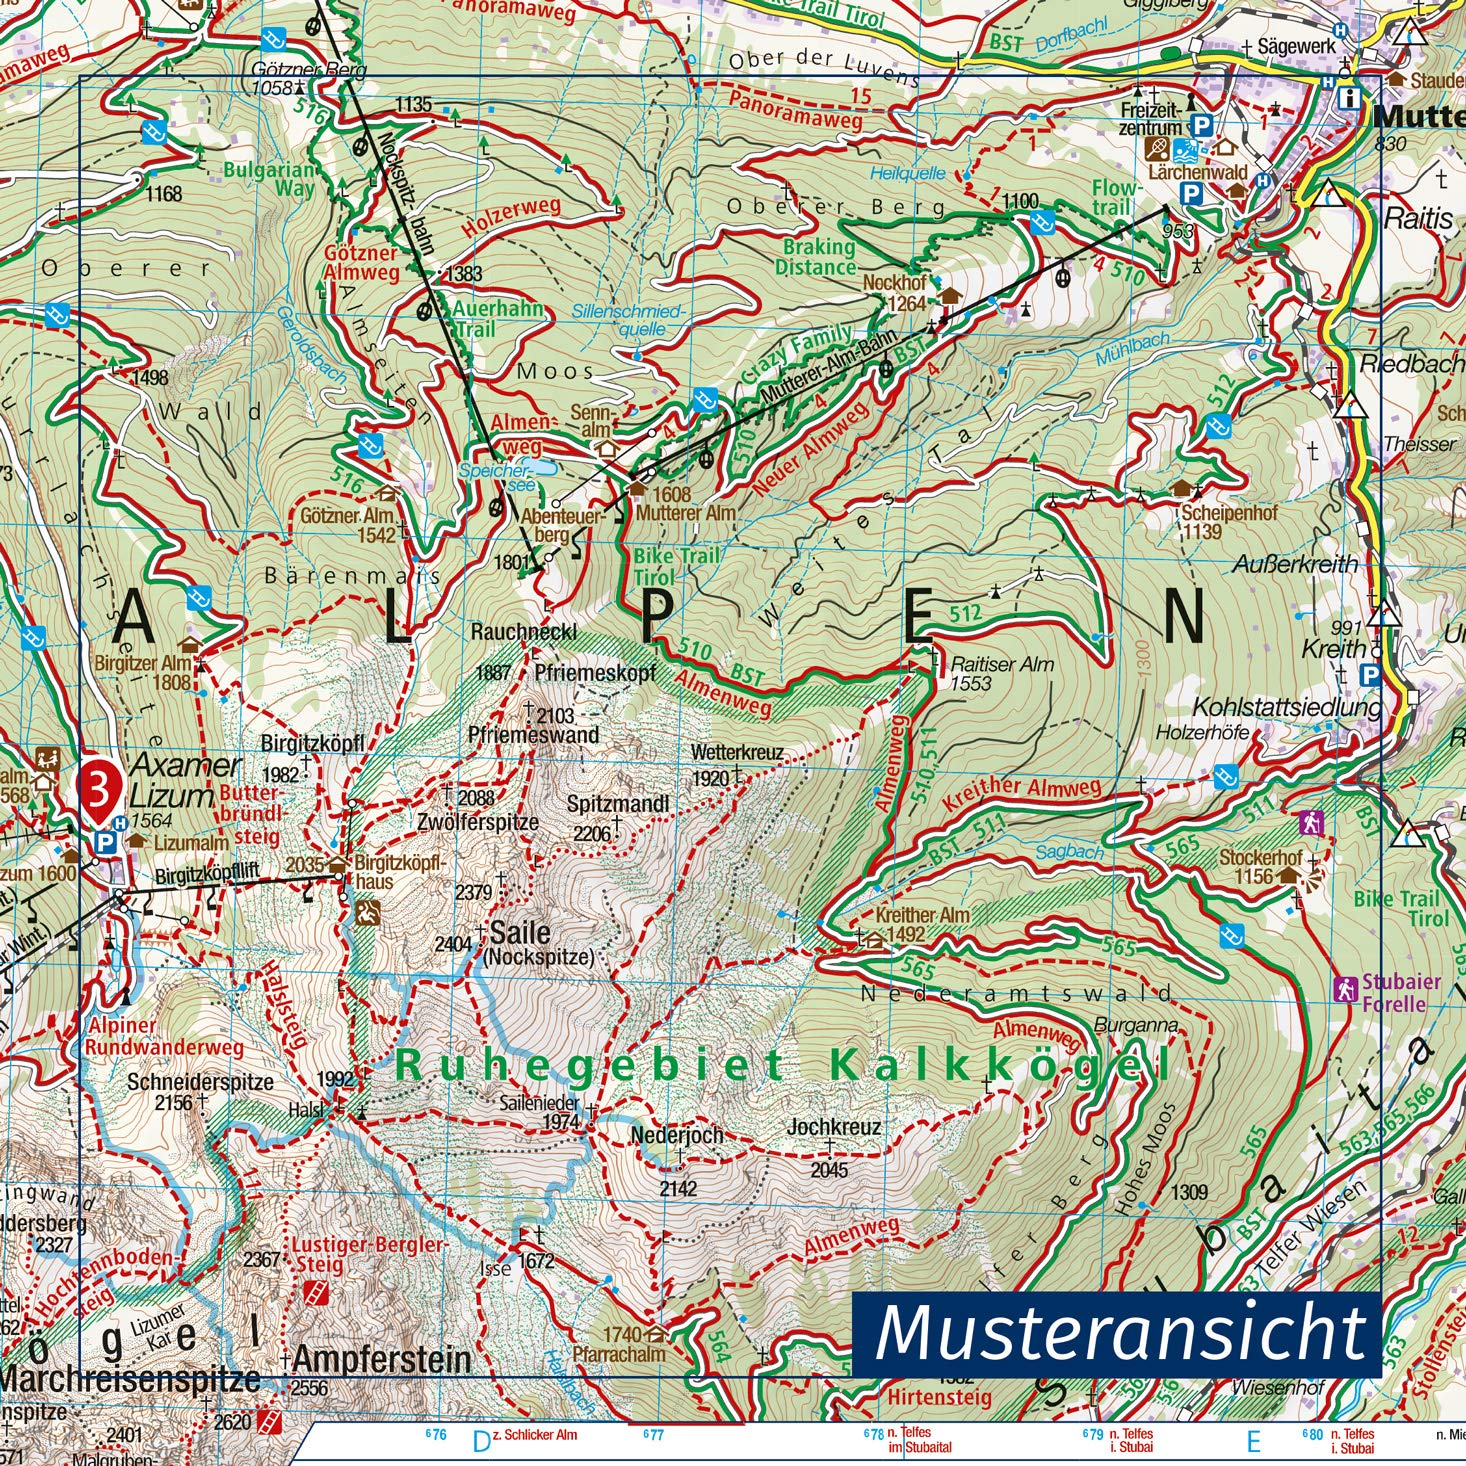 25 Zugspitze, Mieminger Kette 1:50000 - Kompass Wanderkarte